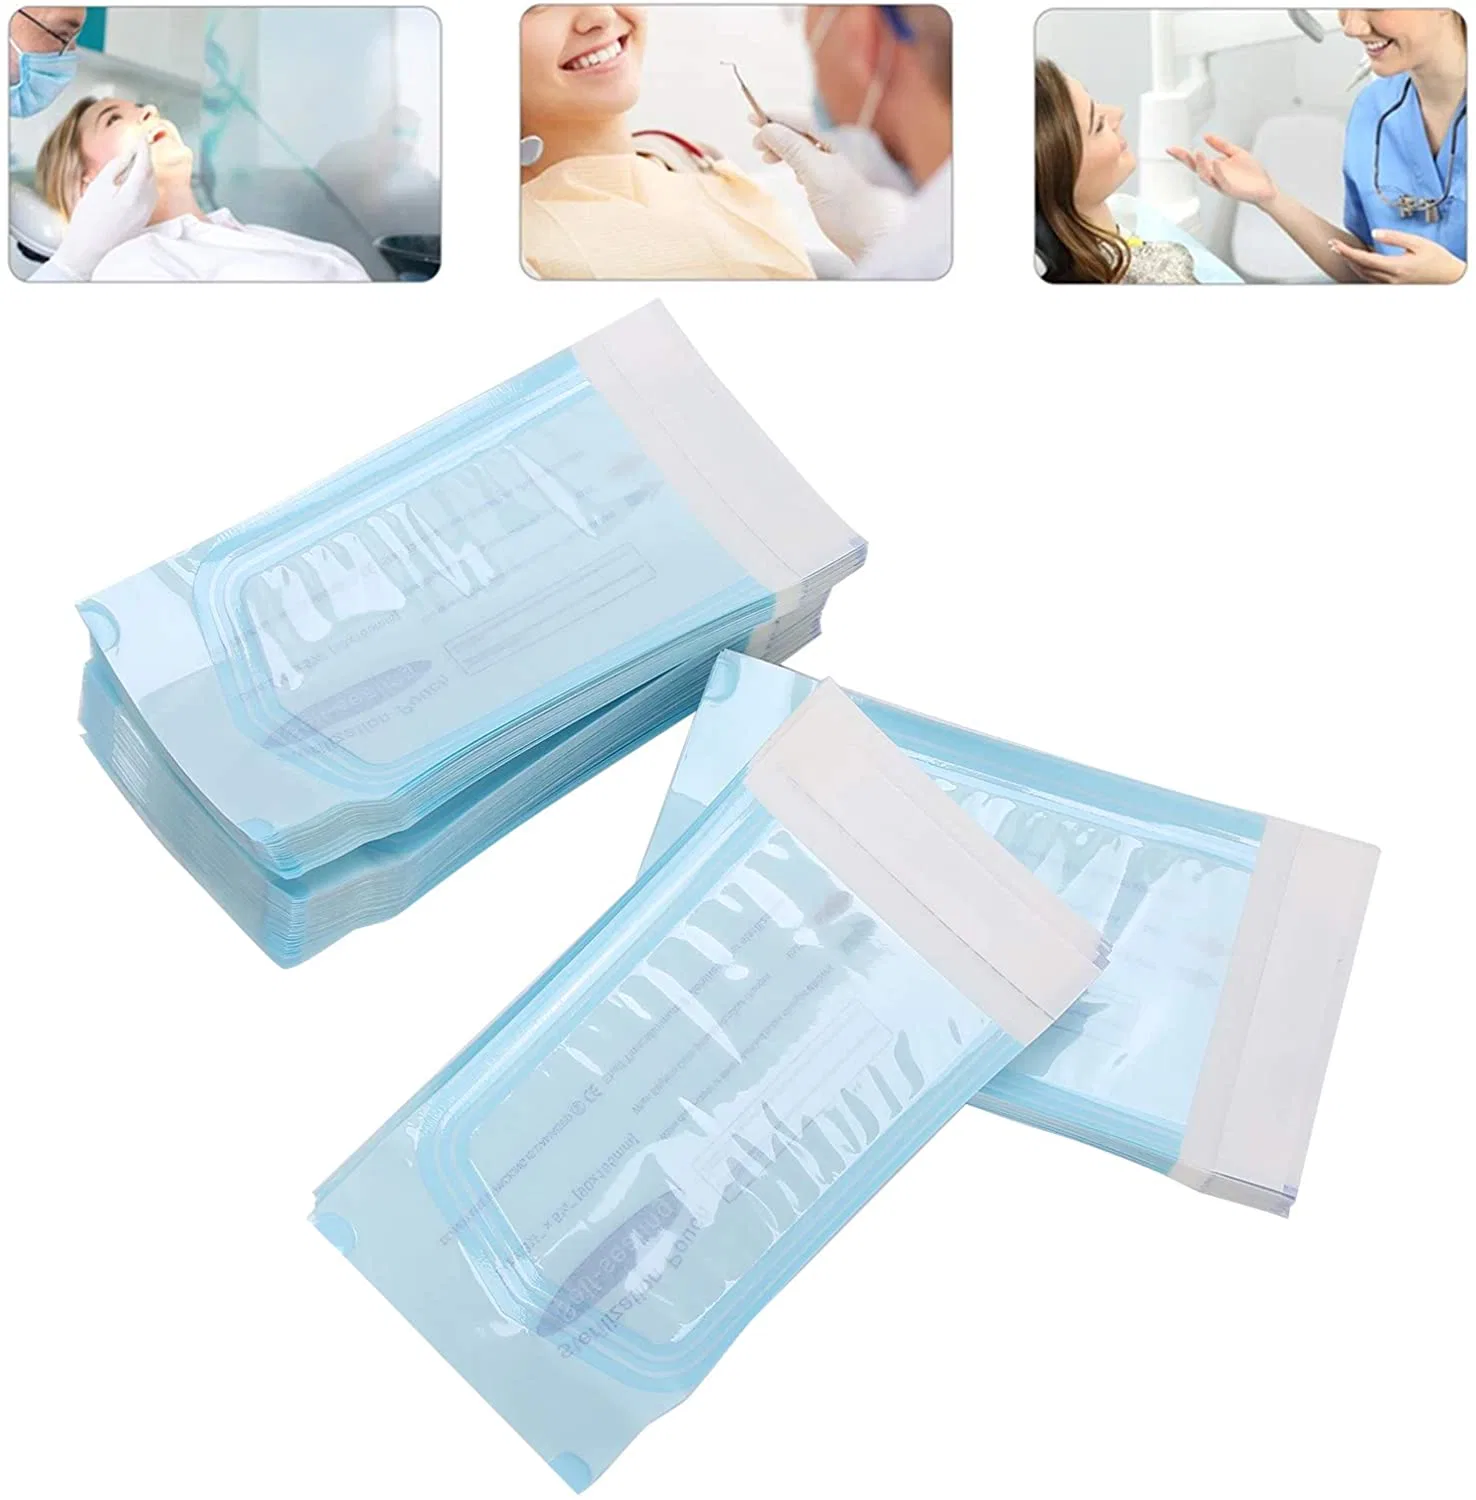 Die Medizinische Verwendung Einweg Selbstklau Sterilisation Beutel Dental Supply Produkt